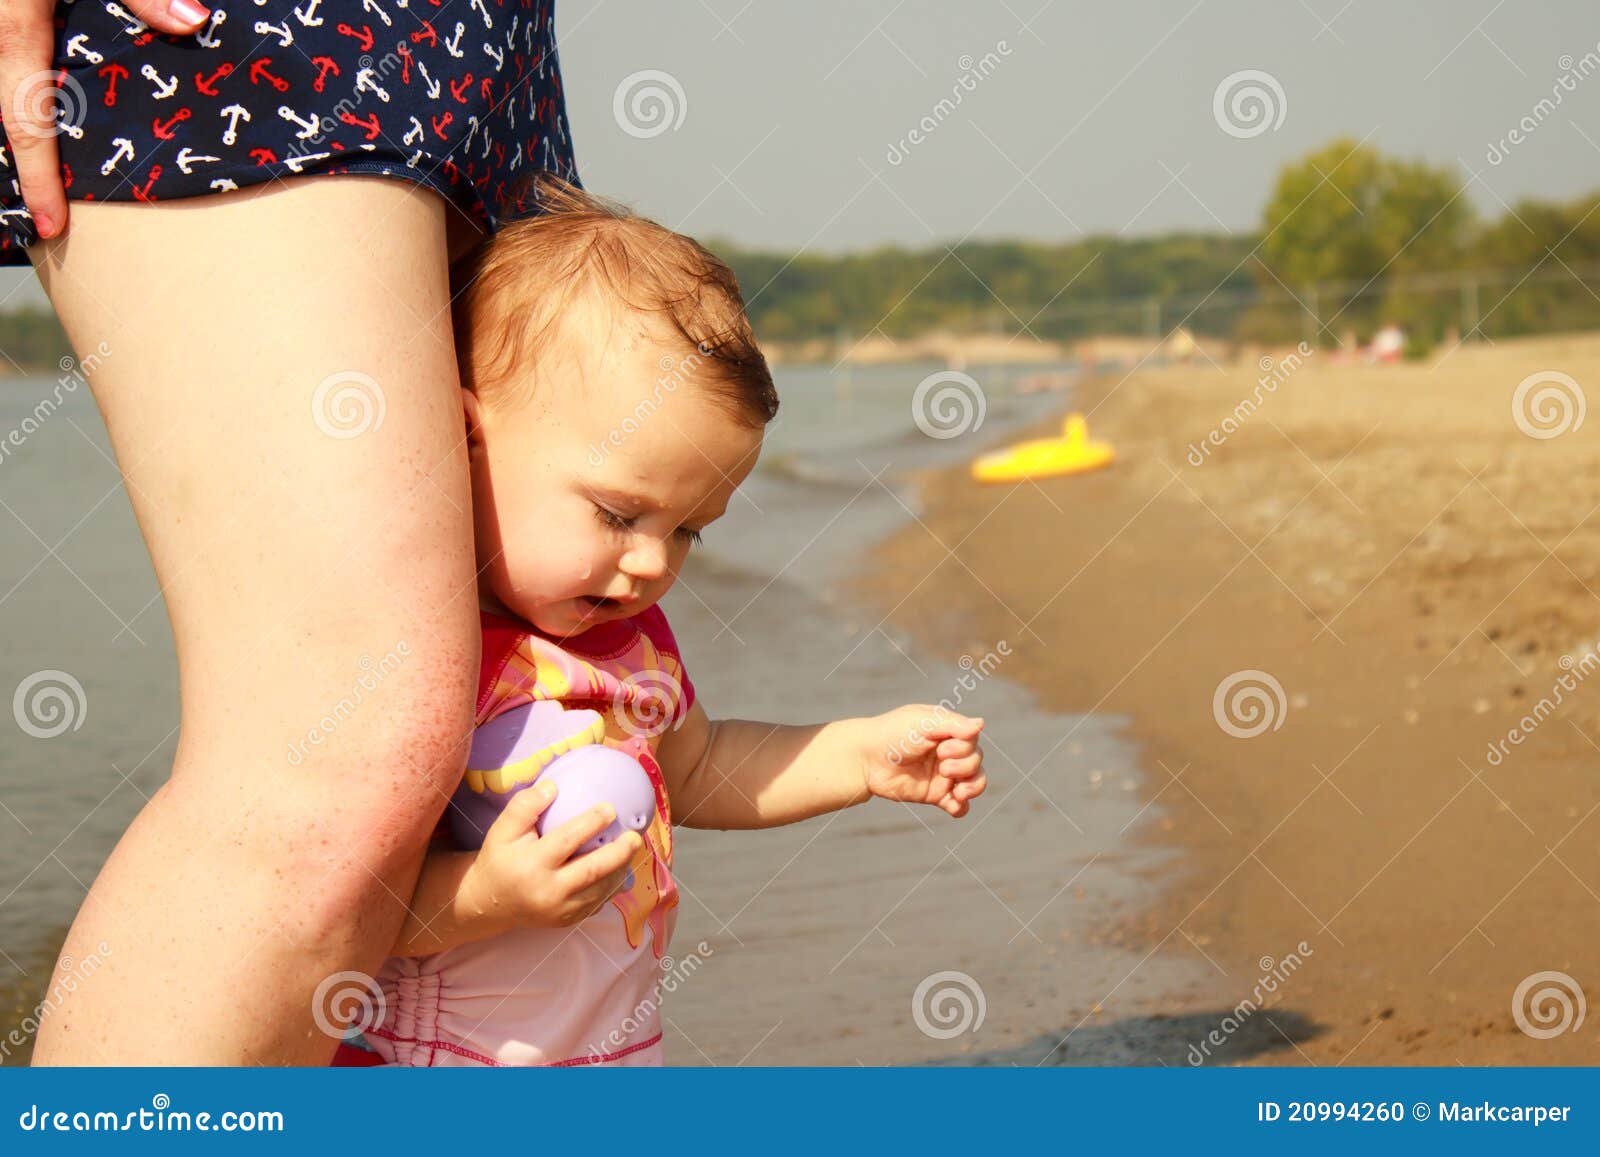 Мама ноги трусы. Держит ребенка за ногу на пляже. Ребенок между маминых ног. Ребенок за маминой юбкой. Ребёнок между бёдер.